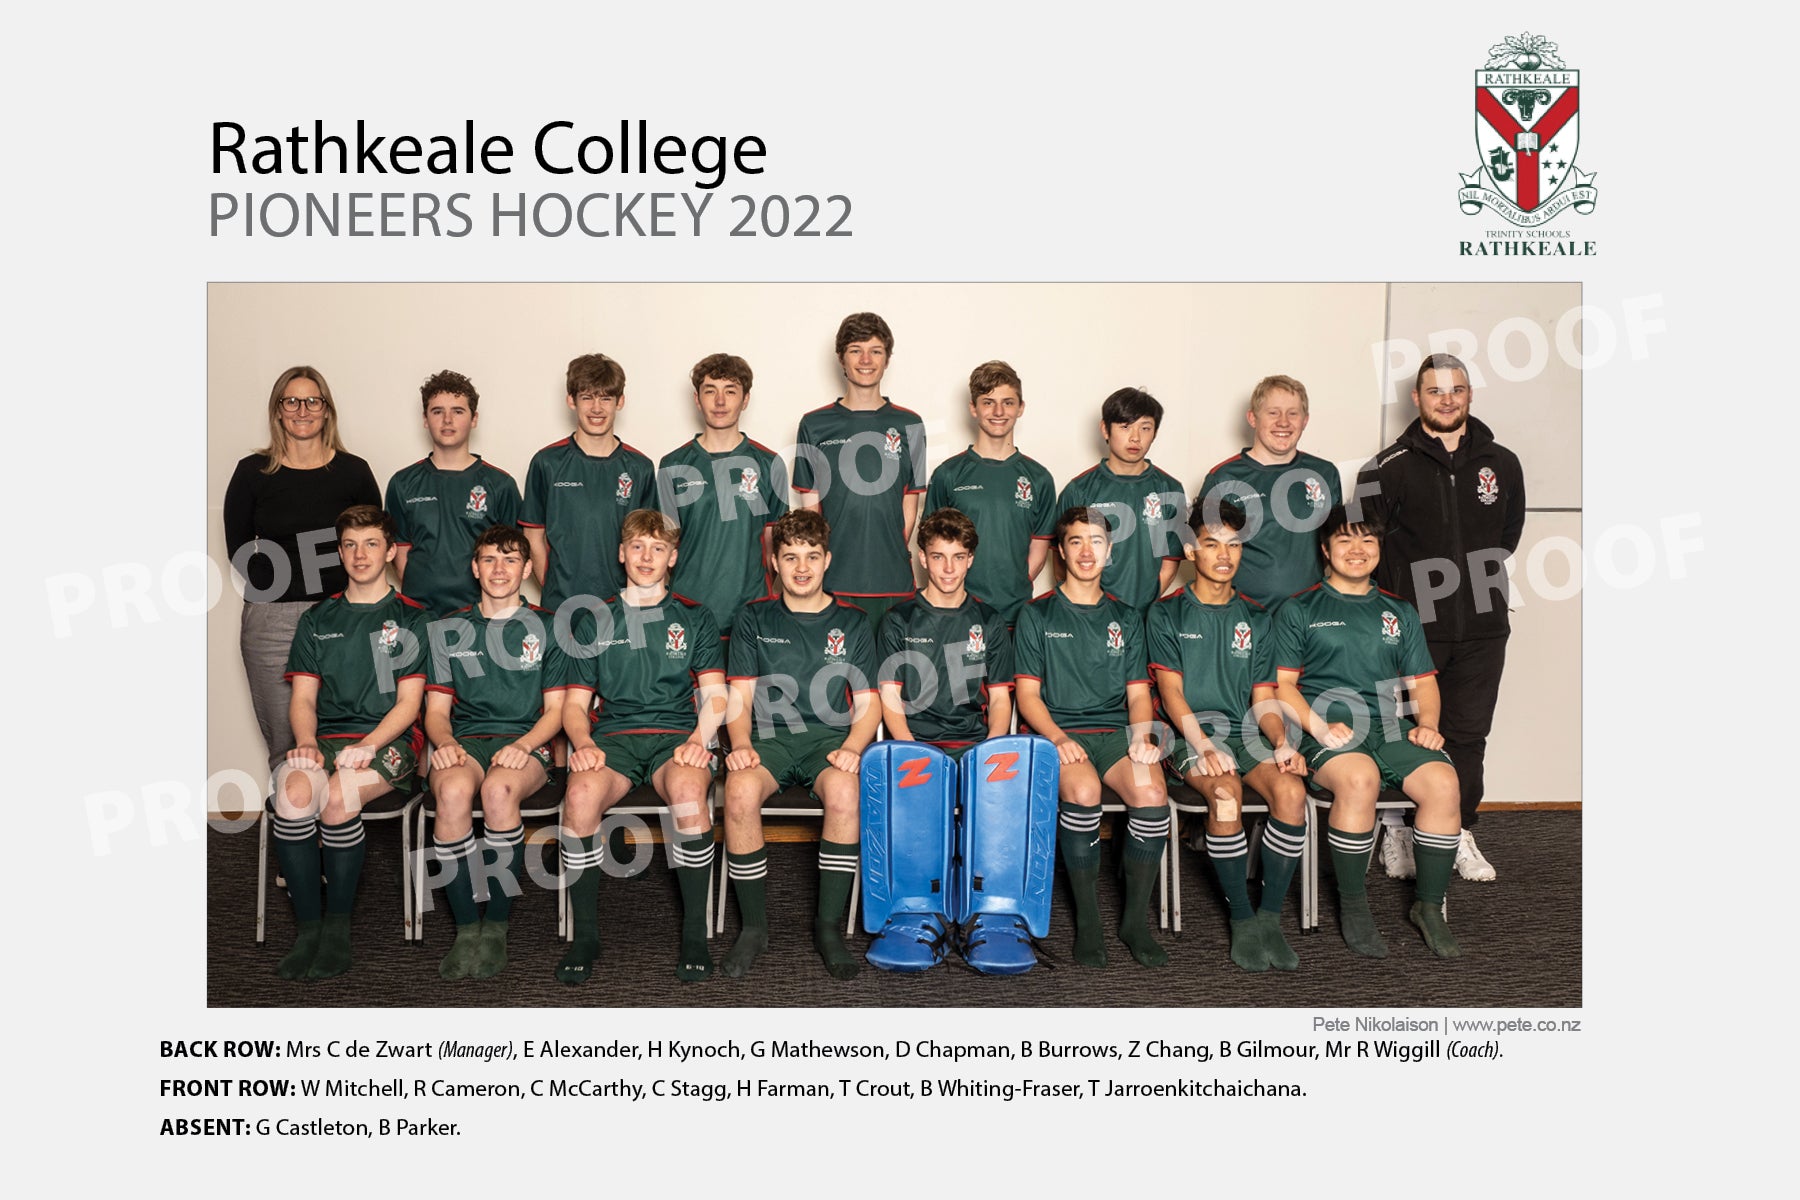 Hockey Pioneers - Rathkeale College 2022